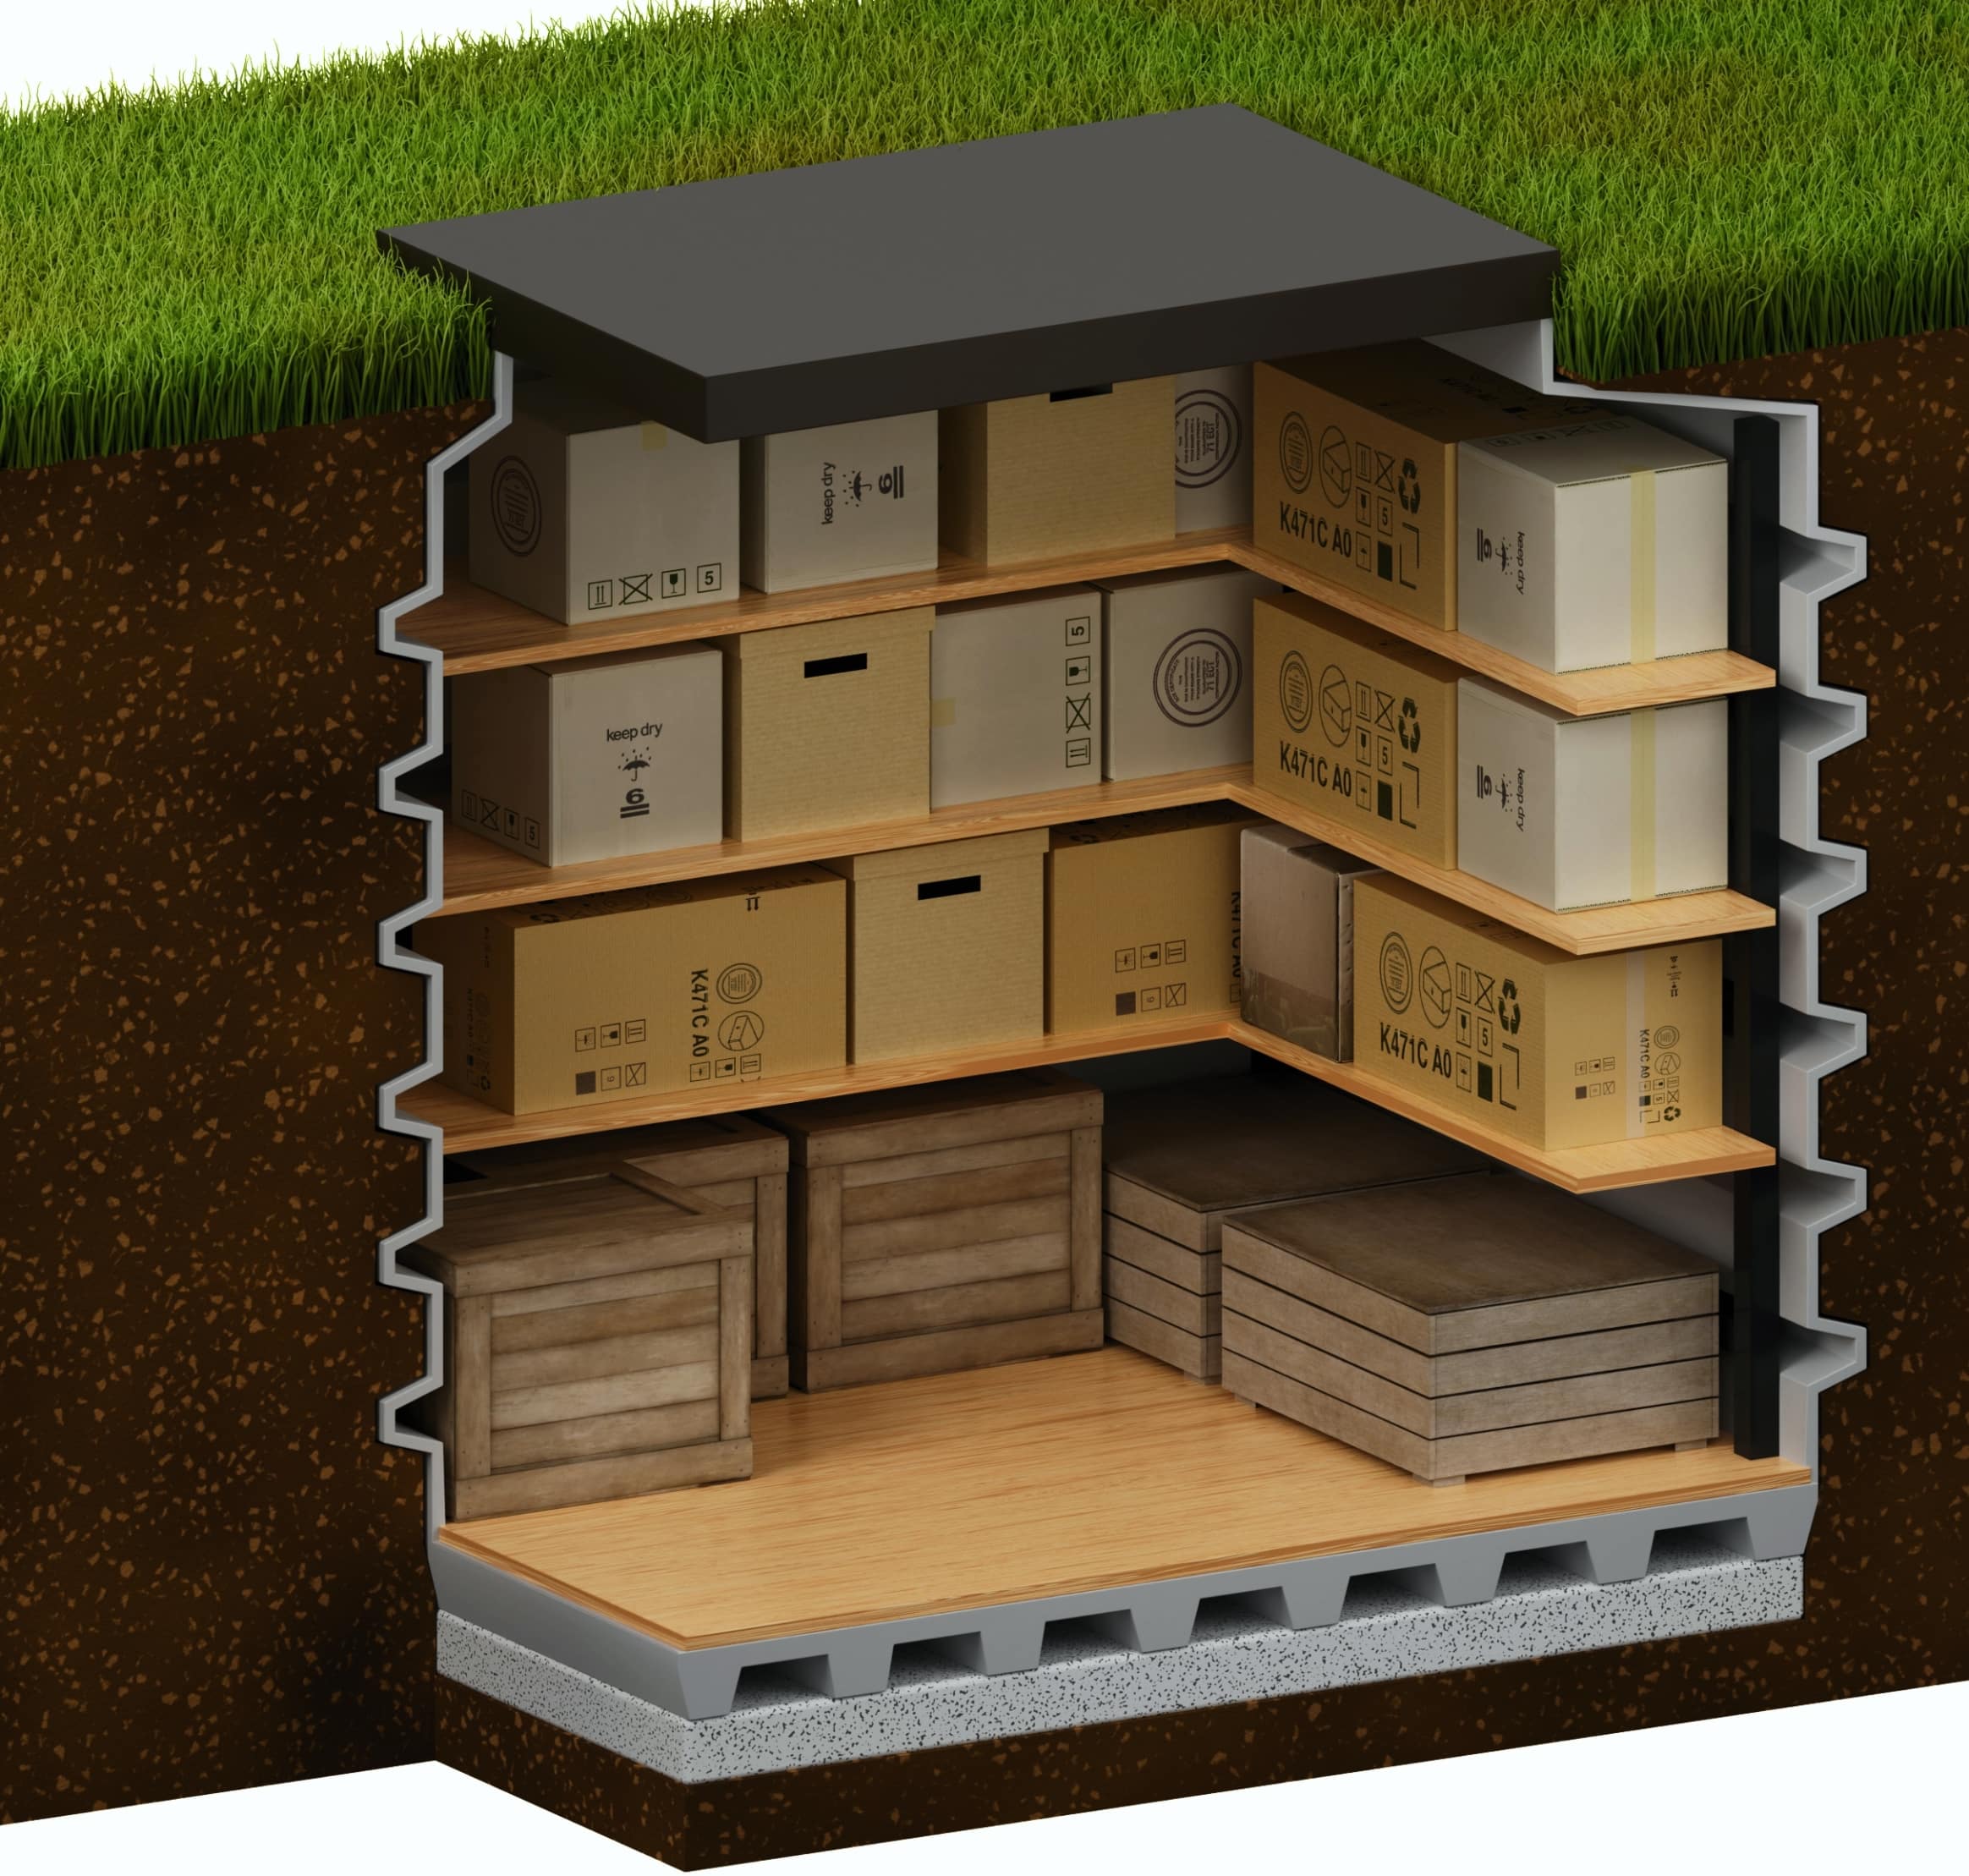 Spiżarnia - Pod tarasem można umieścić schowek 1,6 m² Magazyn Podziemny 130x160 Natural Fridge  9 900  zł